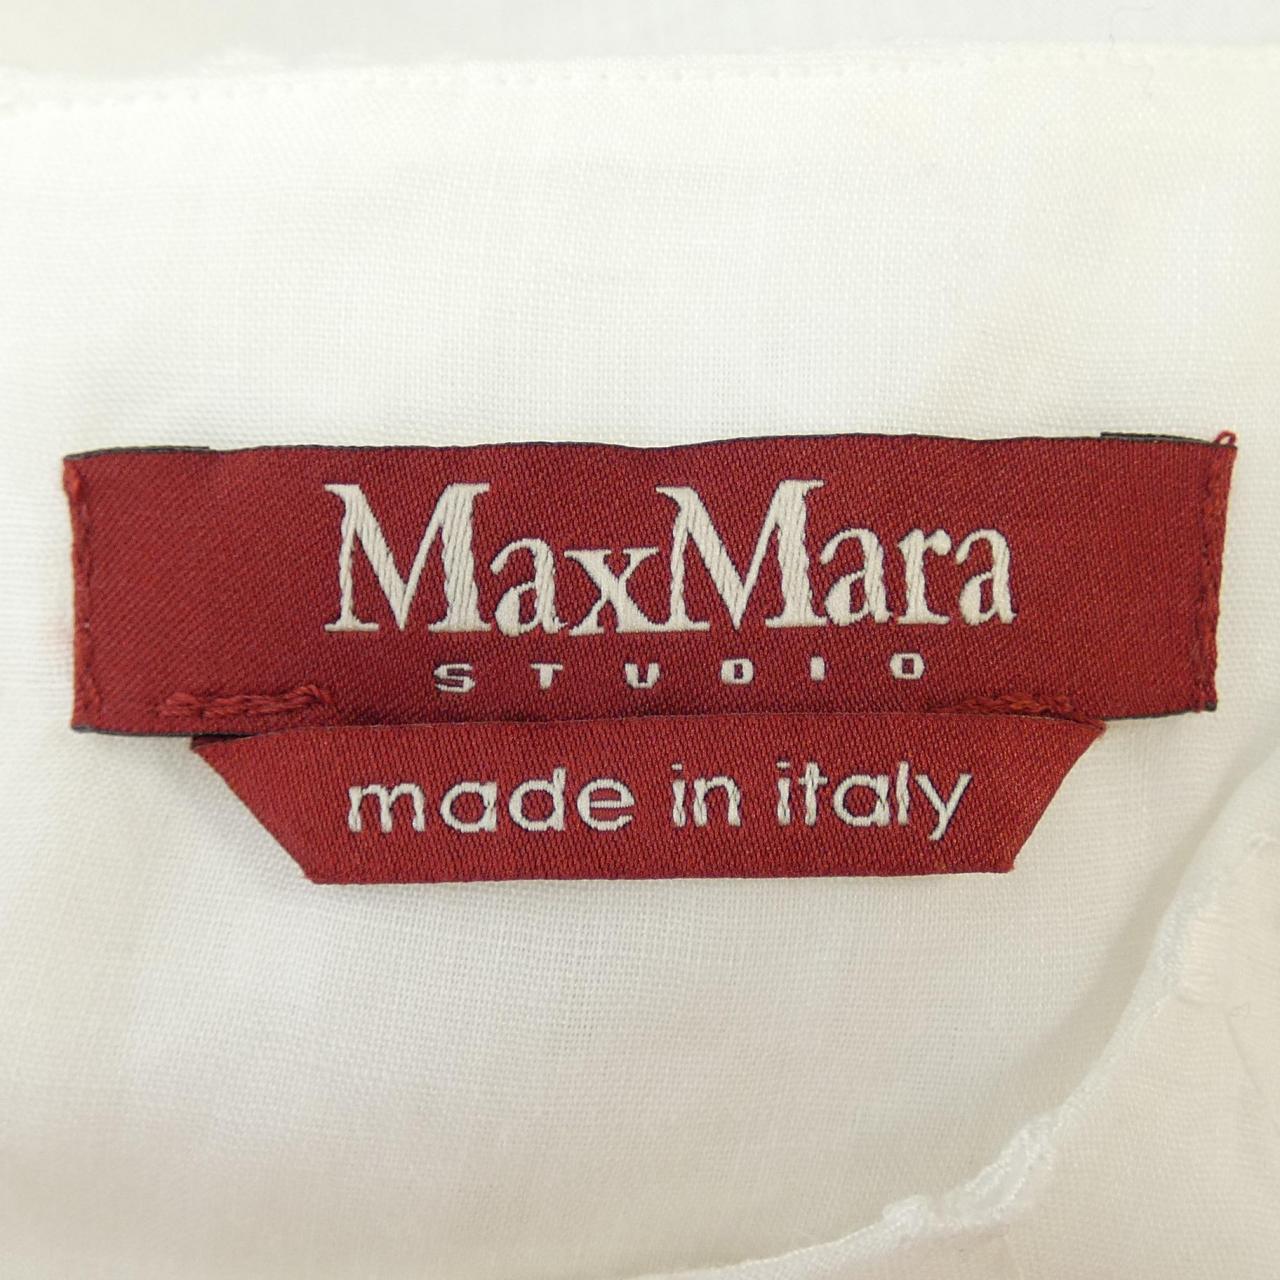 マックスマーラステュディオ Max Mara STUDIO トップス